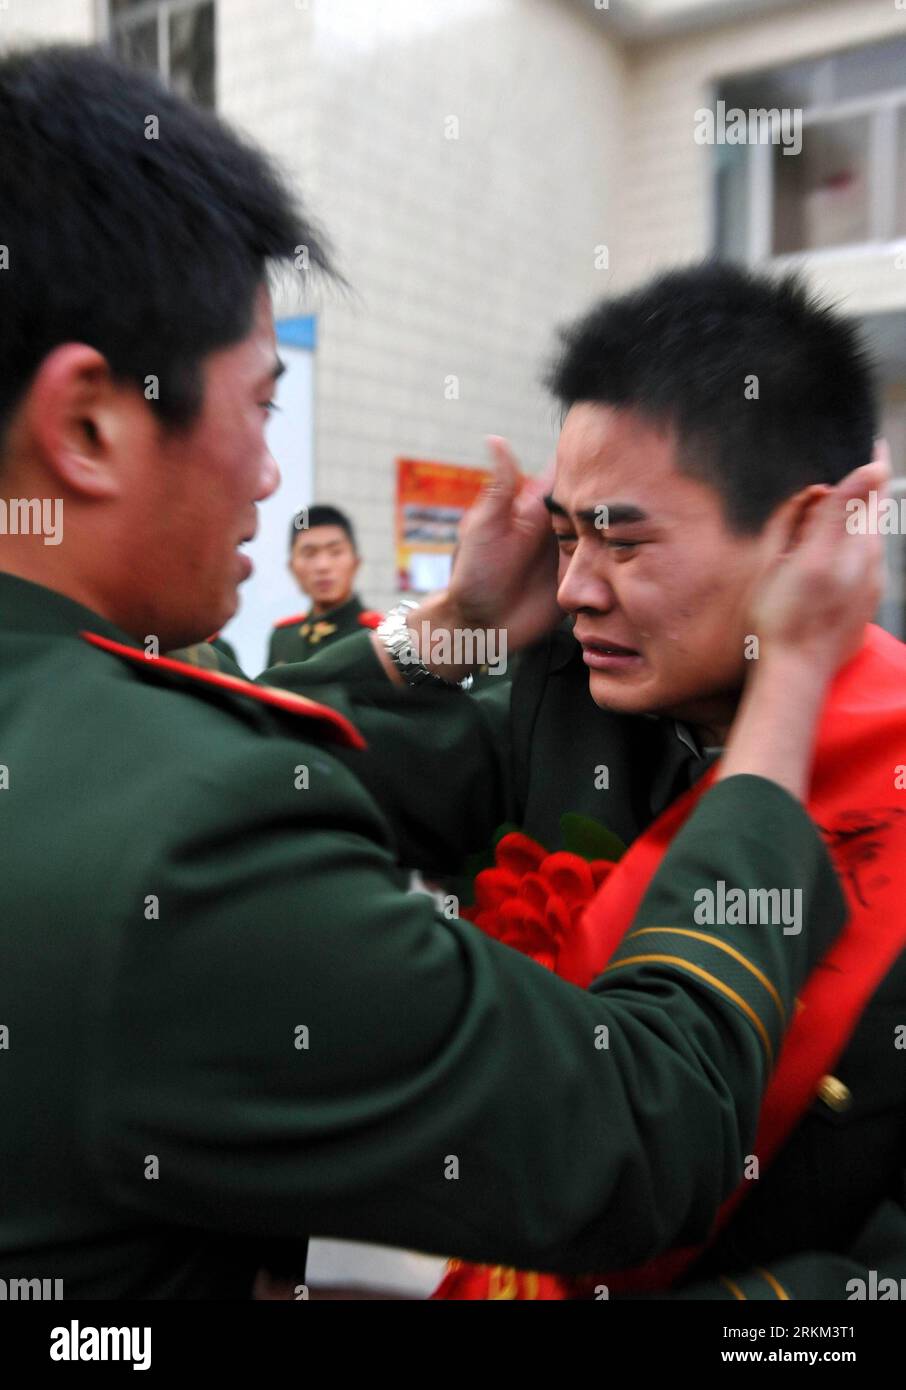 Bildnummer: 56455994 Datum: 25.11.2011 Copyright: imago/Xinhua (111125) -- JINAN, 25. November 2011 (Xinhua) -- Ein pensionierter Soldat weint, bevor er das Bataillon in Jinan, der Hauptstadt der ostchinesischen Provinz Shandong, am 25. November 2011 verlässt. Viele Soldaten absolvierten den Militärdienst in diesem Jahr und müssen das Bataillon verlassen, in dem sie jahrelang gedient haben. (Xinhua/Fang Yi) (lfj) CHINA-SOLDIERS-RETIRING (CN) PUBLICATIONxNOTxINxCHN Gesellschaft Militär Soldat Adschied Verabschiedung Militärdienst Tränen Trauer xjh x0x 2011 hoch kurios 56455994 Datum 25 11 2011 Copyright Imago XINHUA Jinan Nov 25 2011 XINHUA Stockfoto